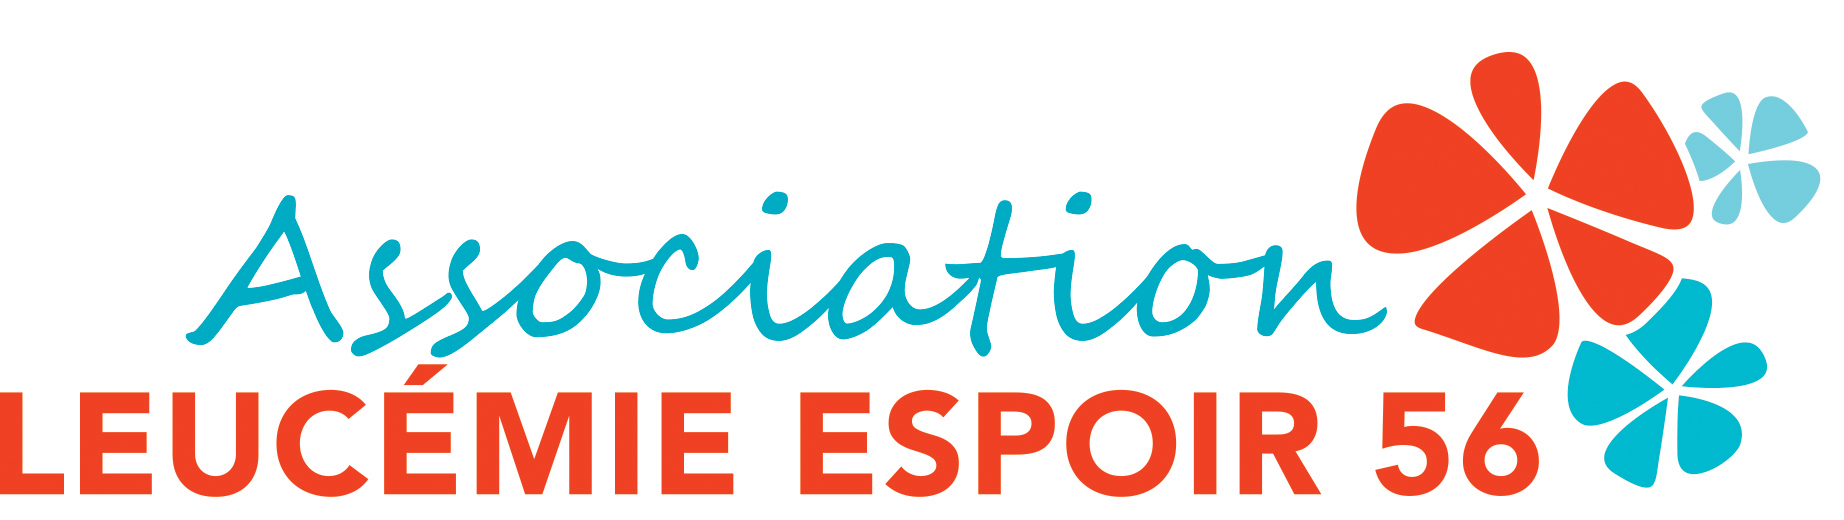 Association L'ASSEMBLEE GENERALE 2022 DE LEUCEMIE ESPOIR 56